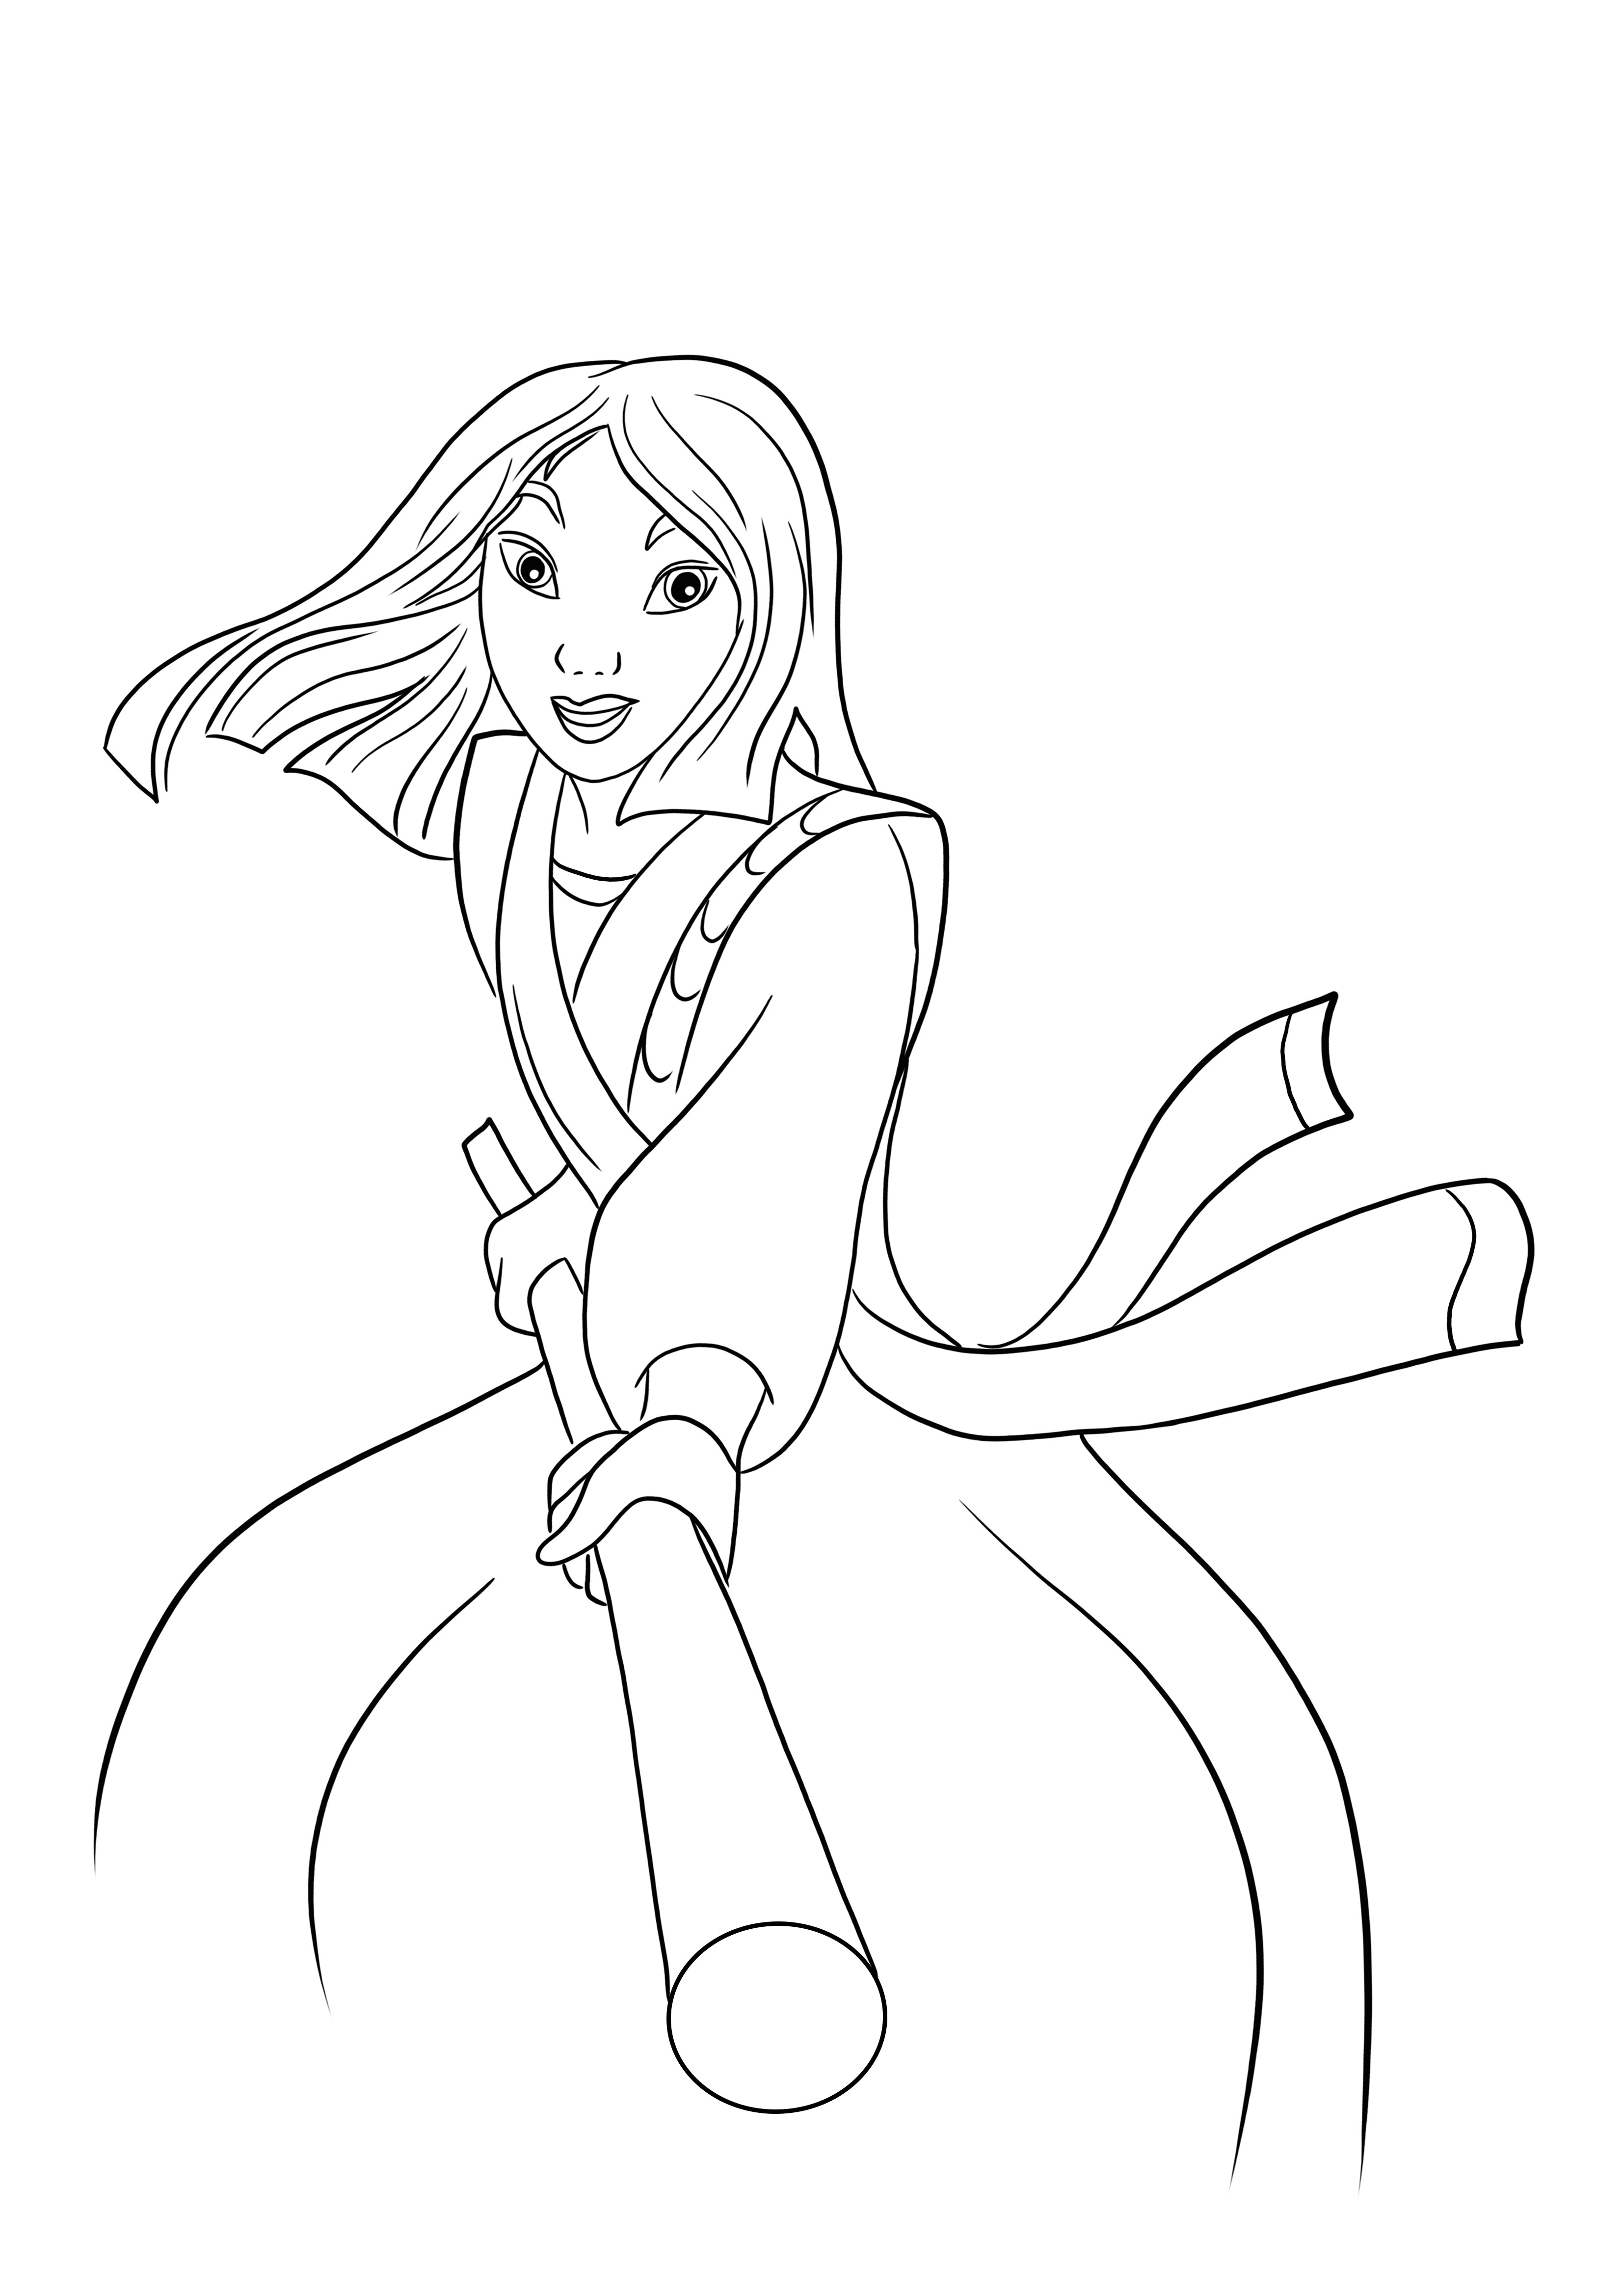 Hier ist ein kostenloser Download des Kampfbildes von Prinzessin Mulan zum einfachen Ausmalen